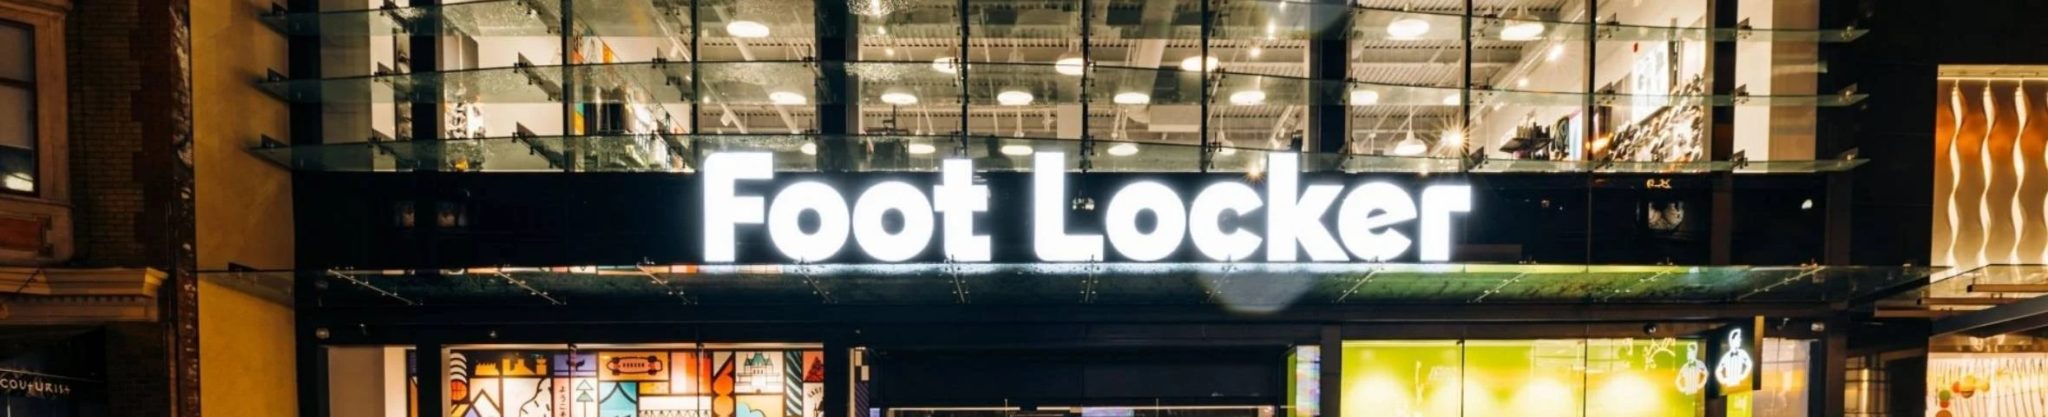 Foot Locker Store 2048x417 